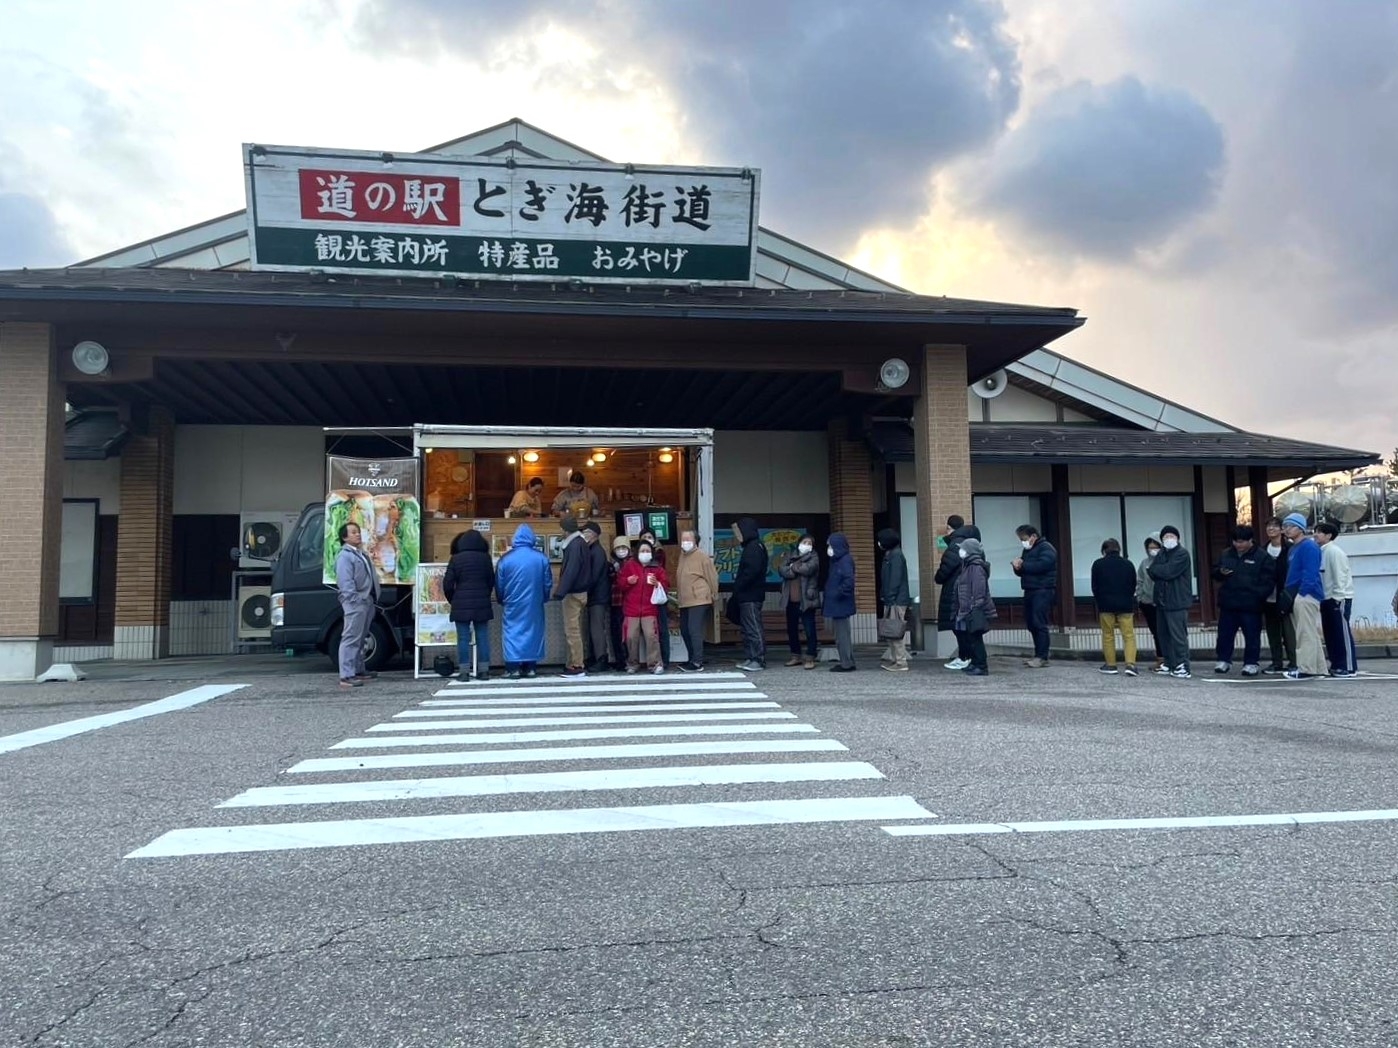 【災害支援】石川県志賀町、能登町、珠洲市大谷町へのキッチンカー派遣・炊き出しに協力しました。